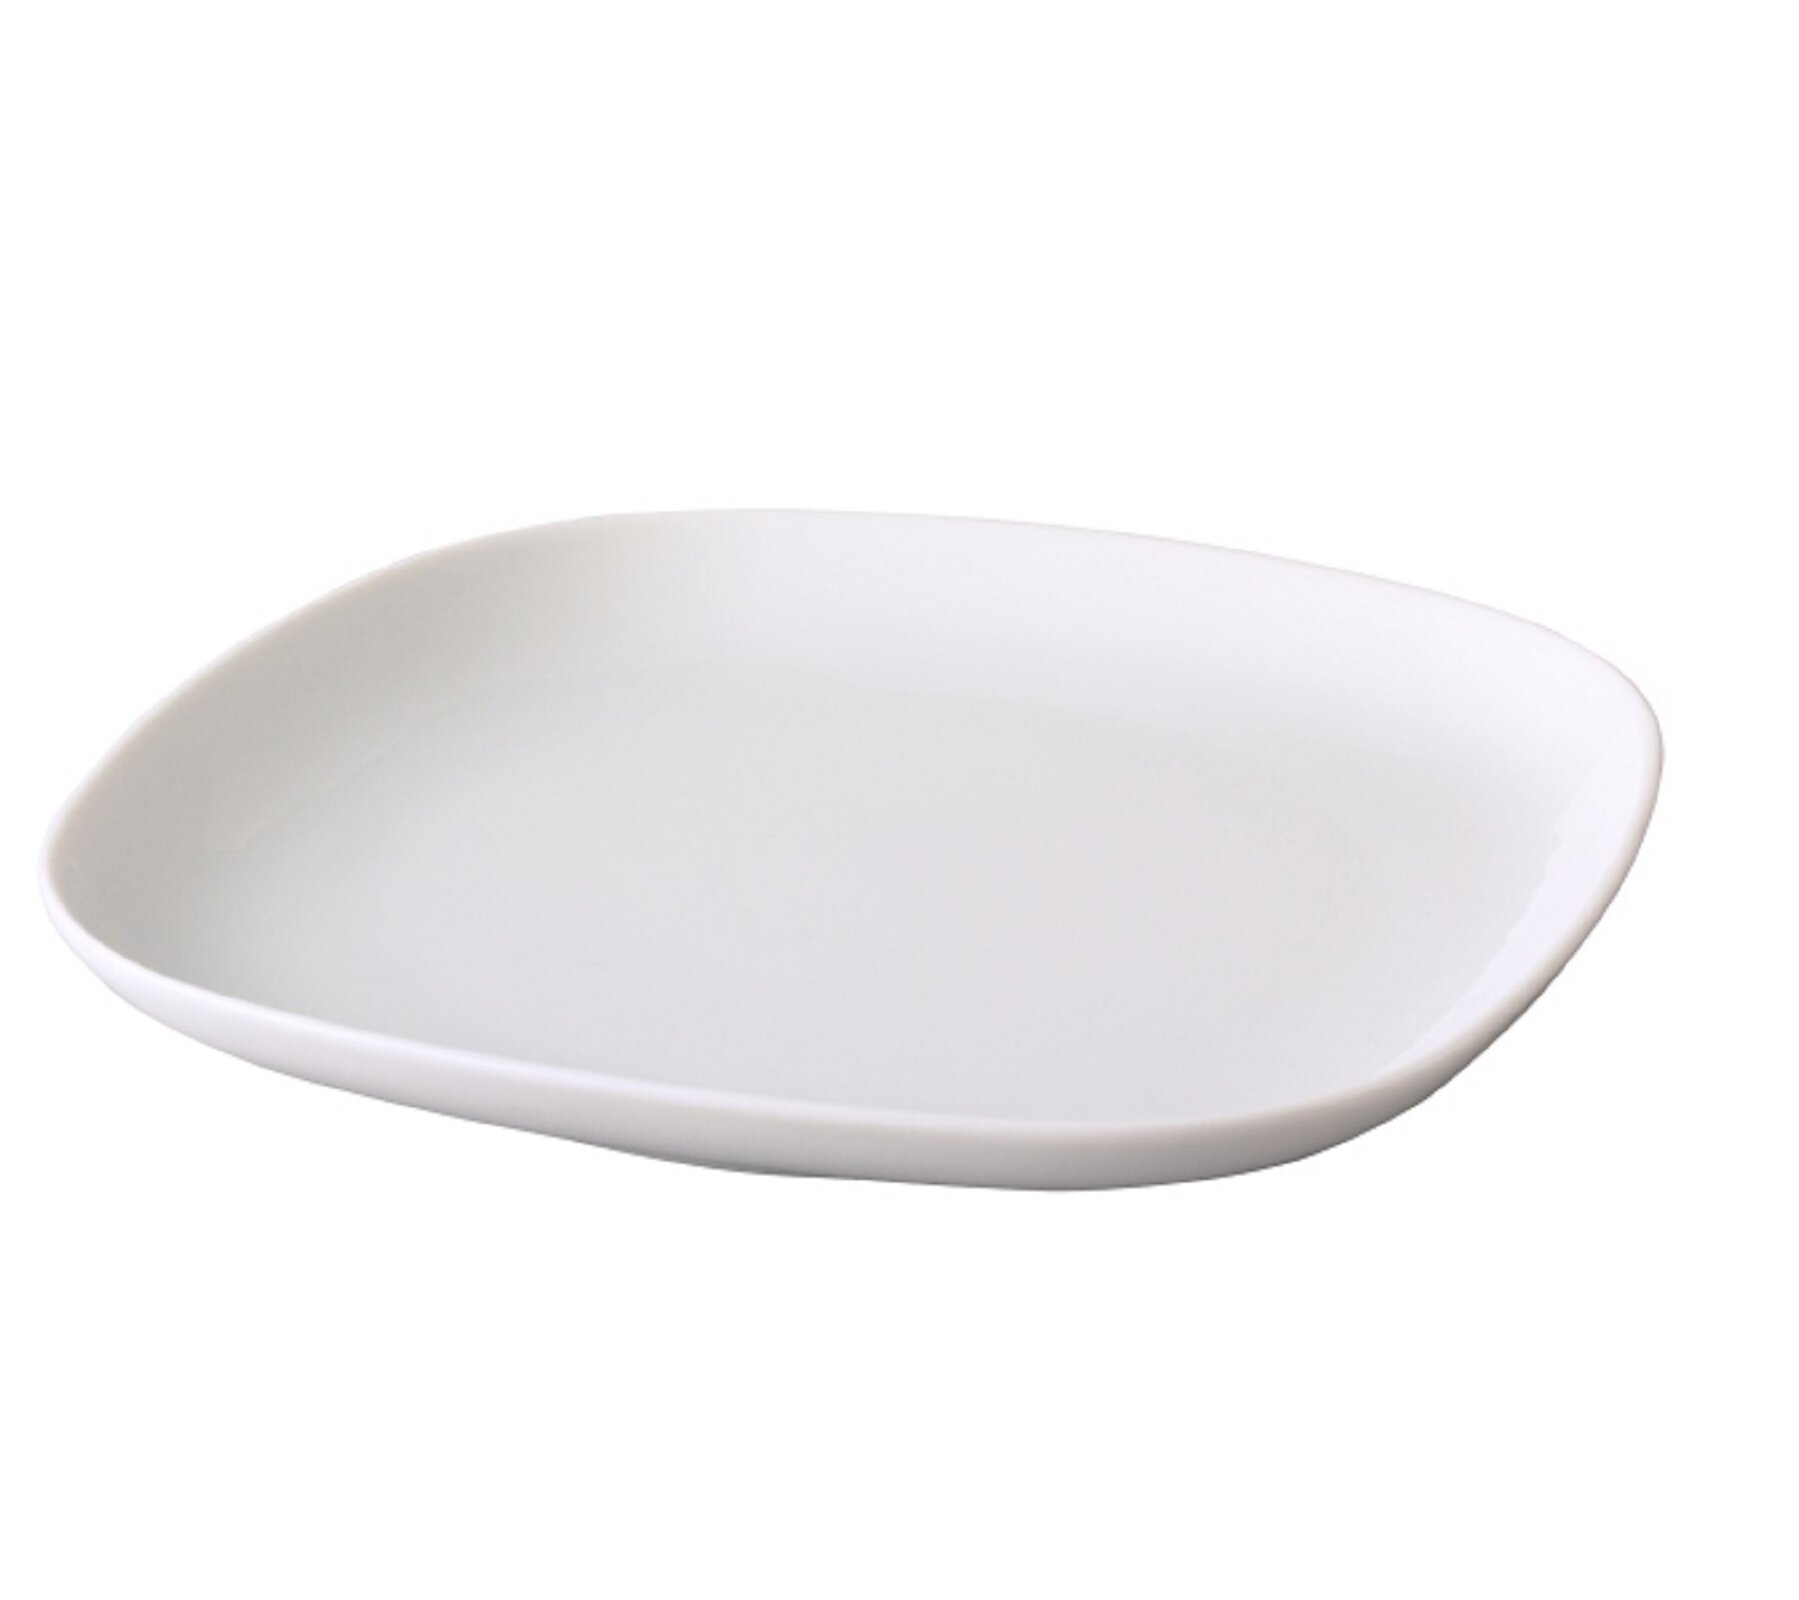 Ilustracja przedstawia biały, ceramiczny talerzyk w kształcie kwadratu o zaokrąglonych rogach.